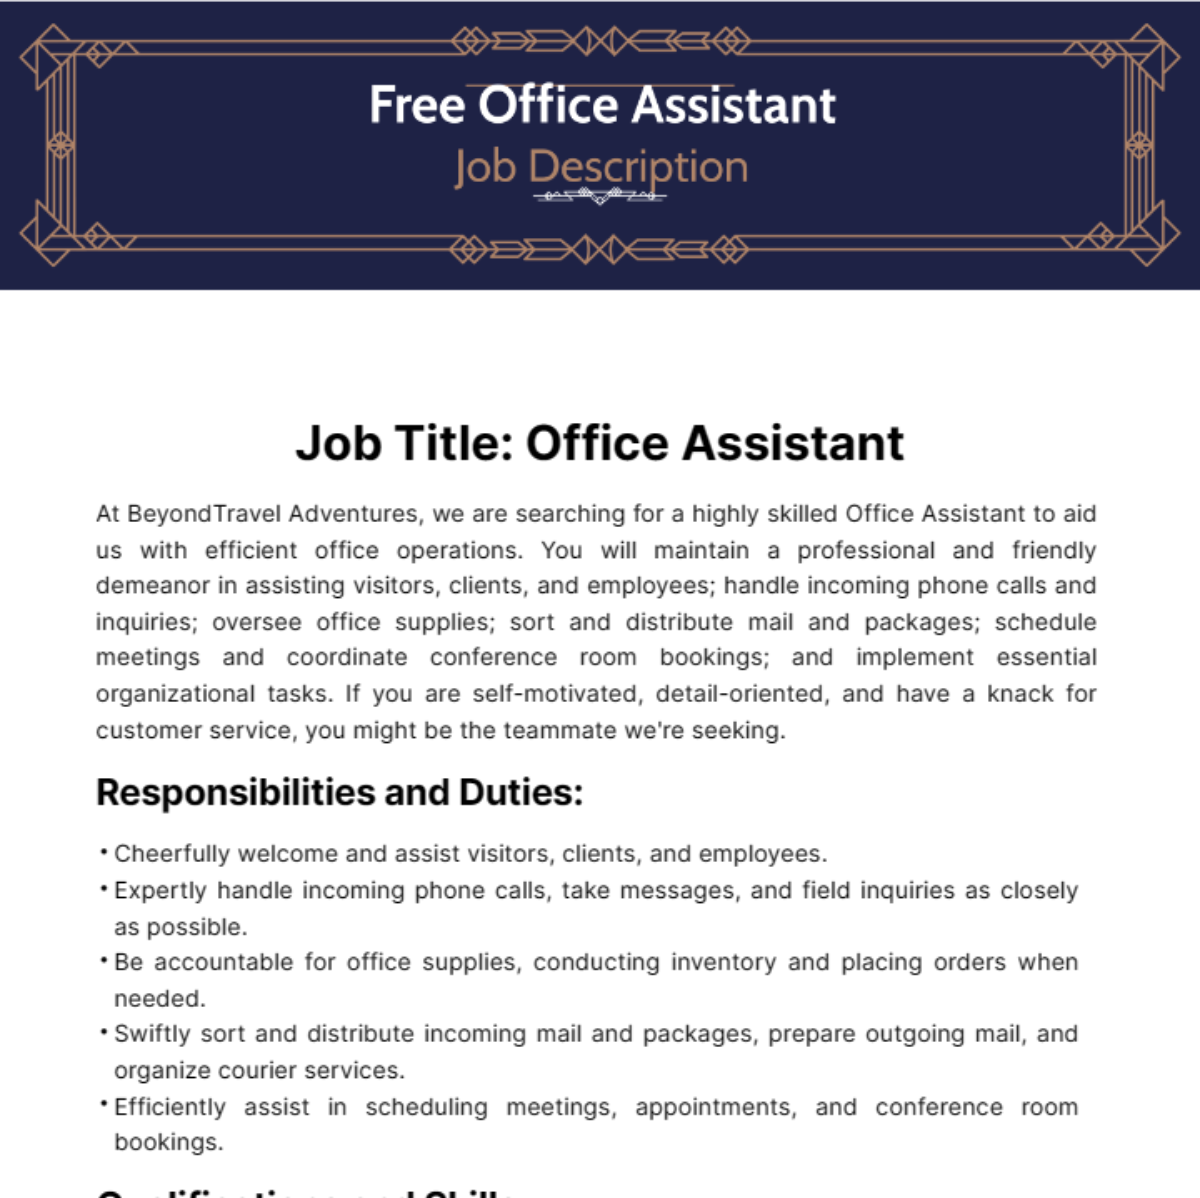 Free Office Assistant Job Description Template